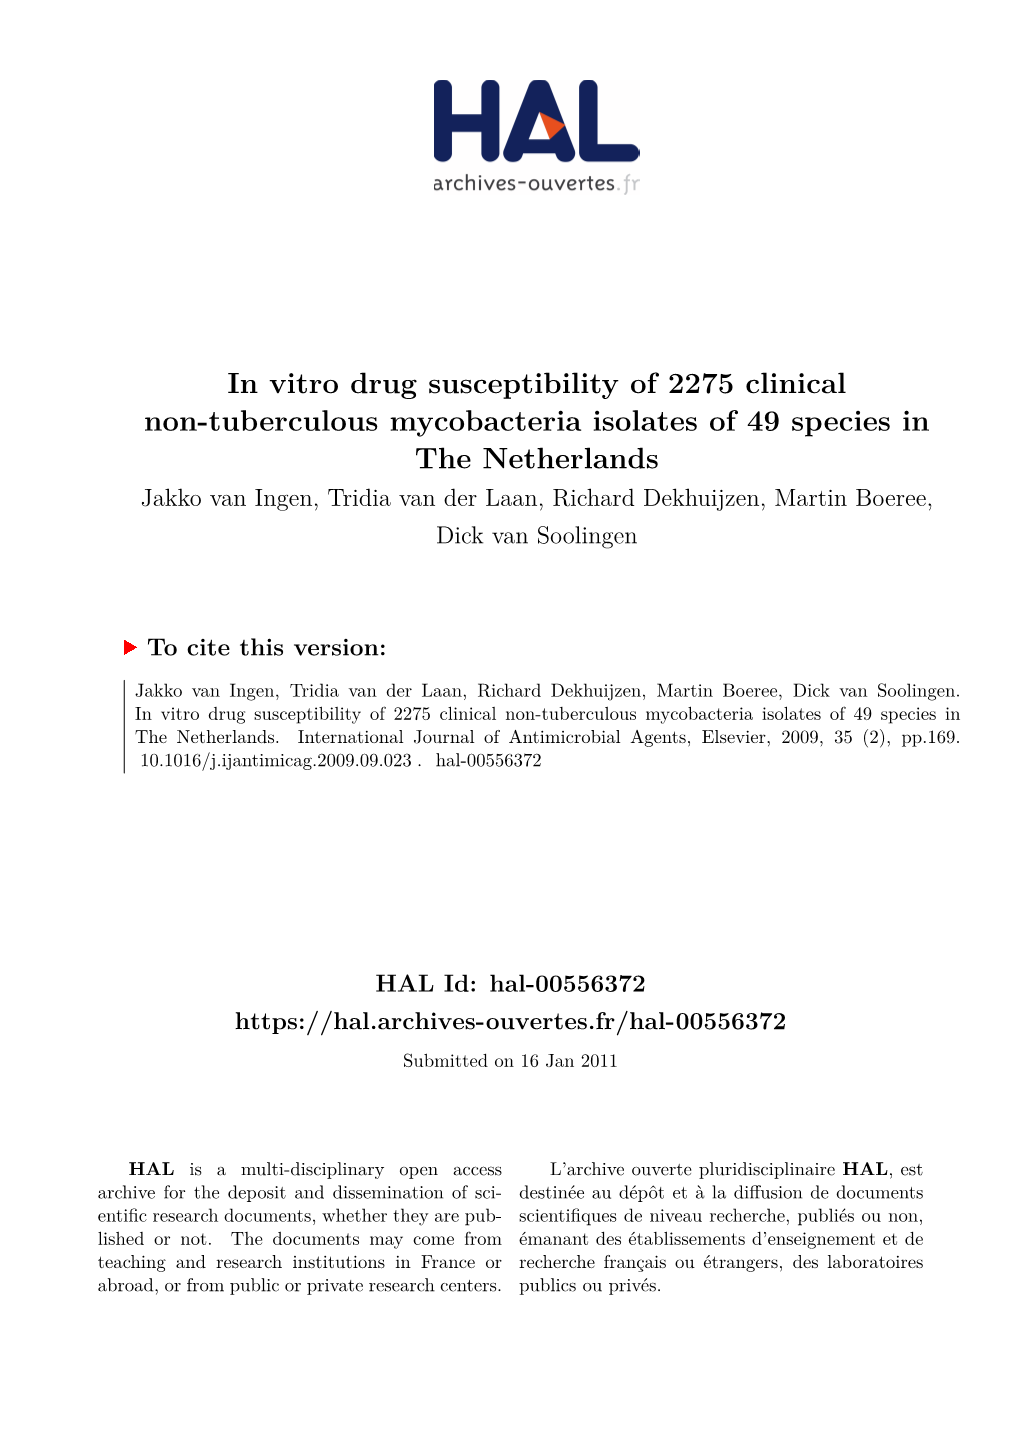 In Vitro Drug Susceptibility of 2275 Clinical Non-Tuberculous